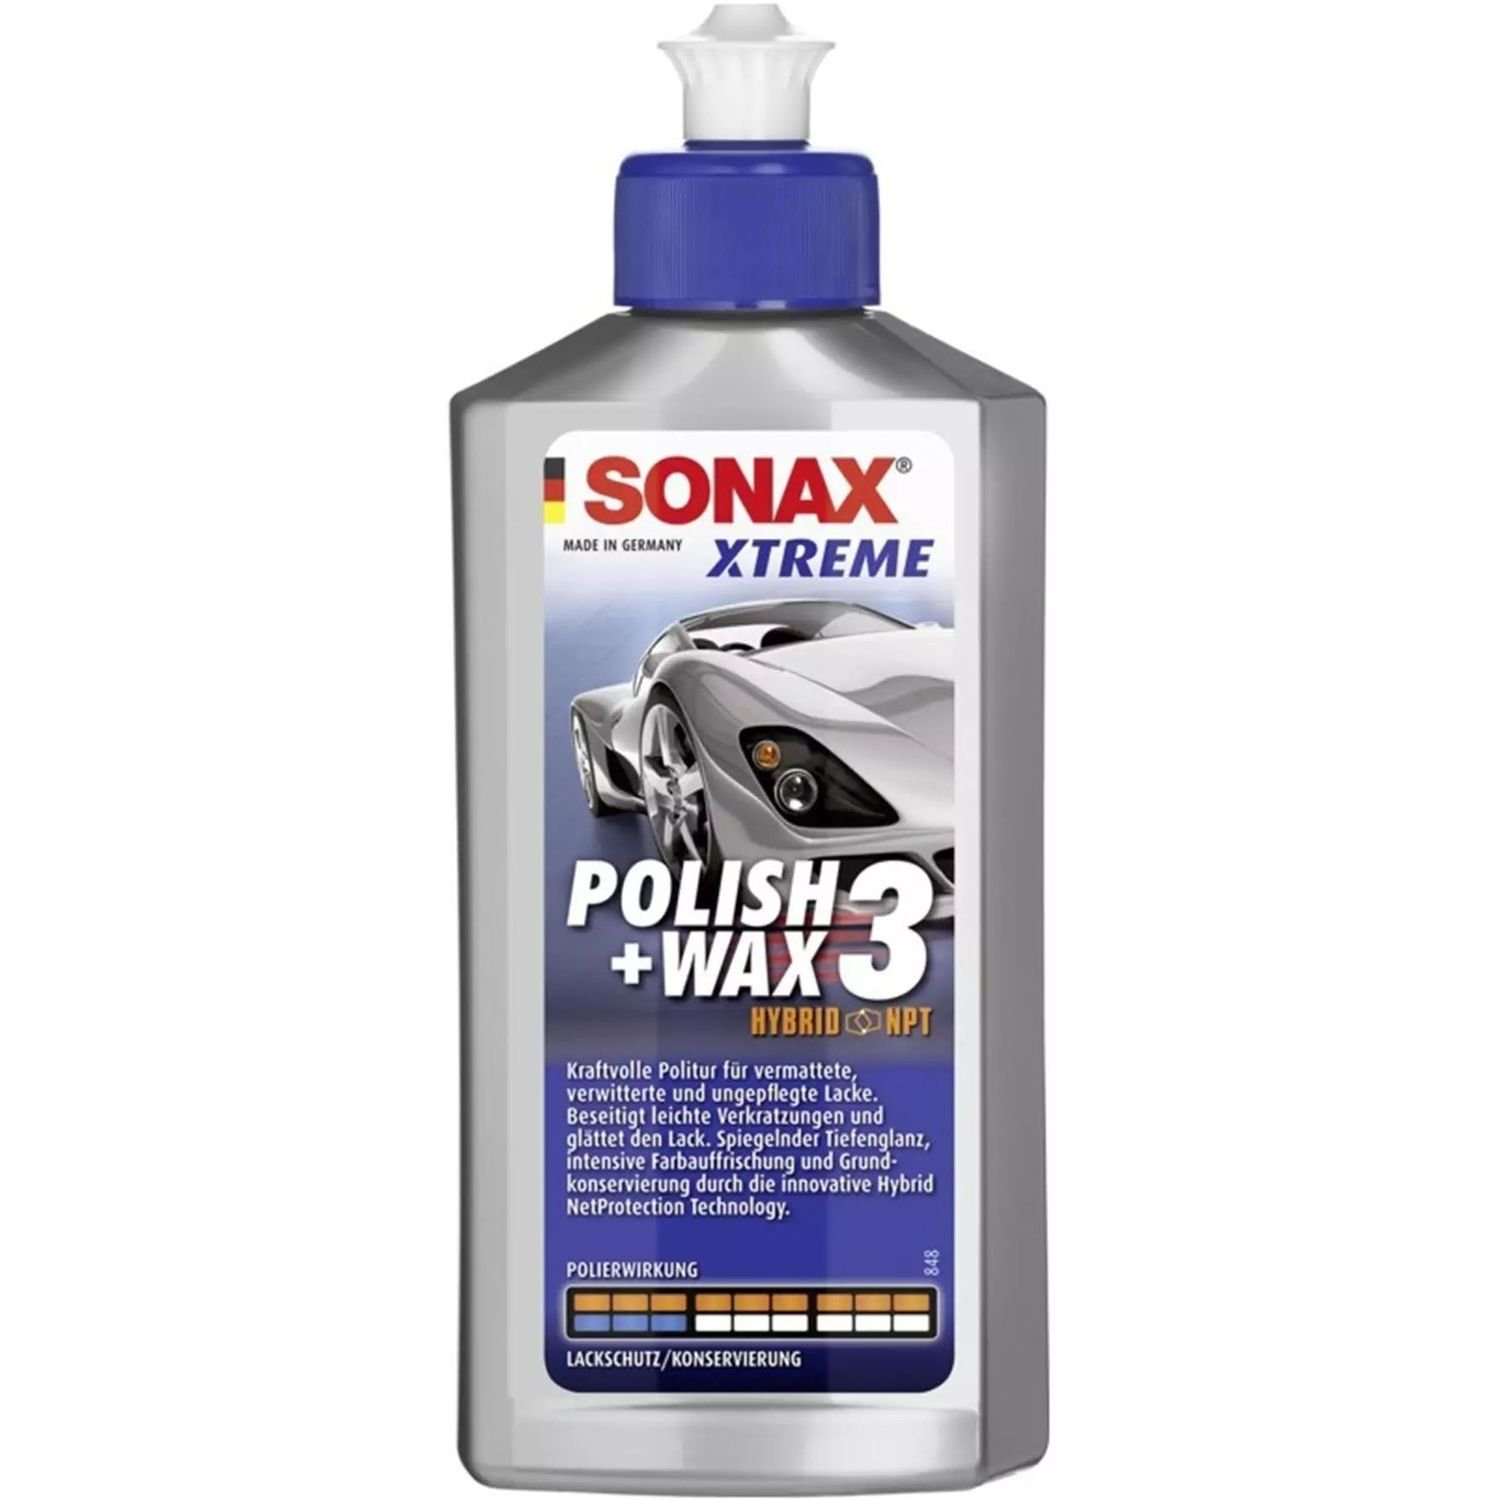 Поліроль Sonax Xtreme Polish Wax 3 Hybrid NPT, з воском, 250 мл - фото 1